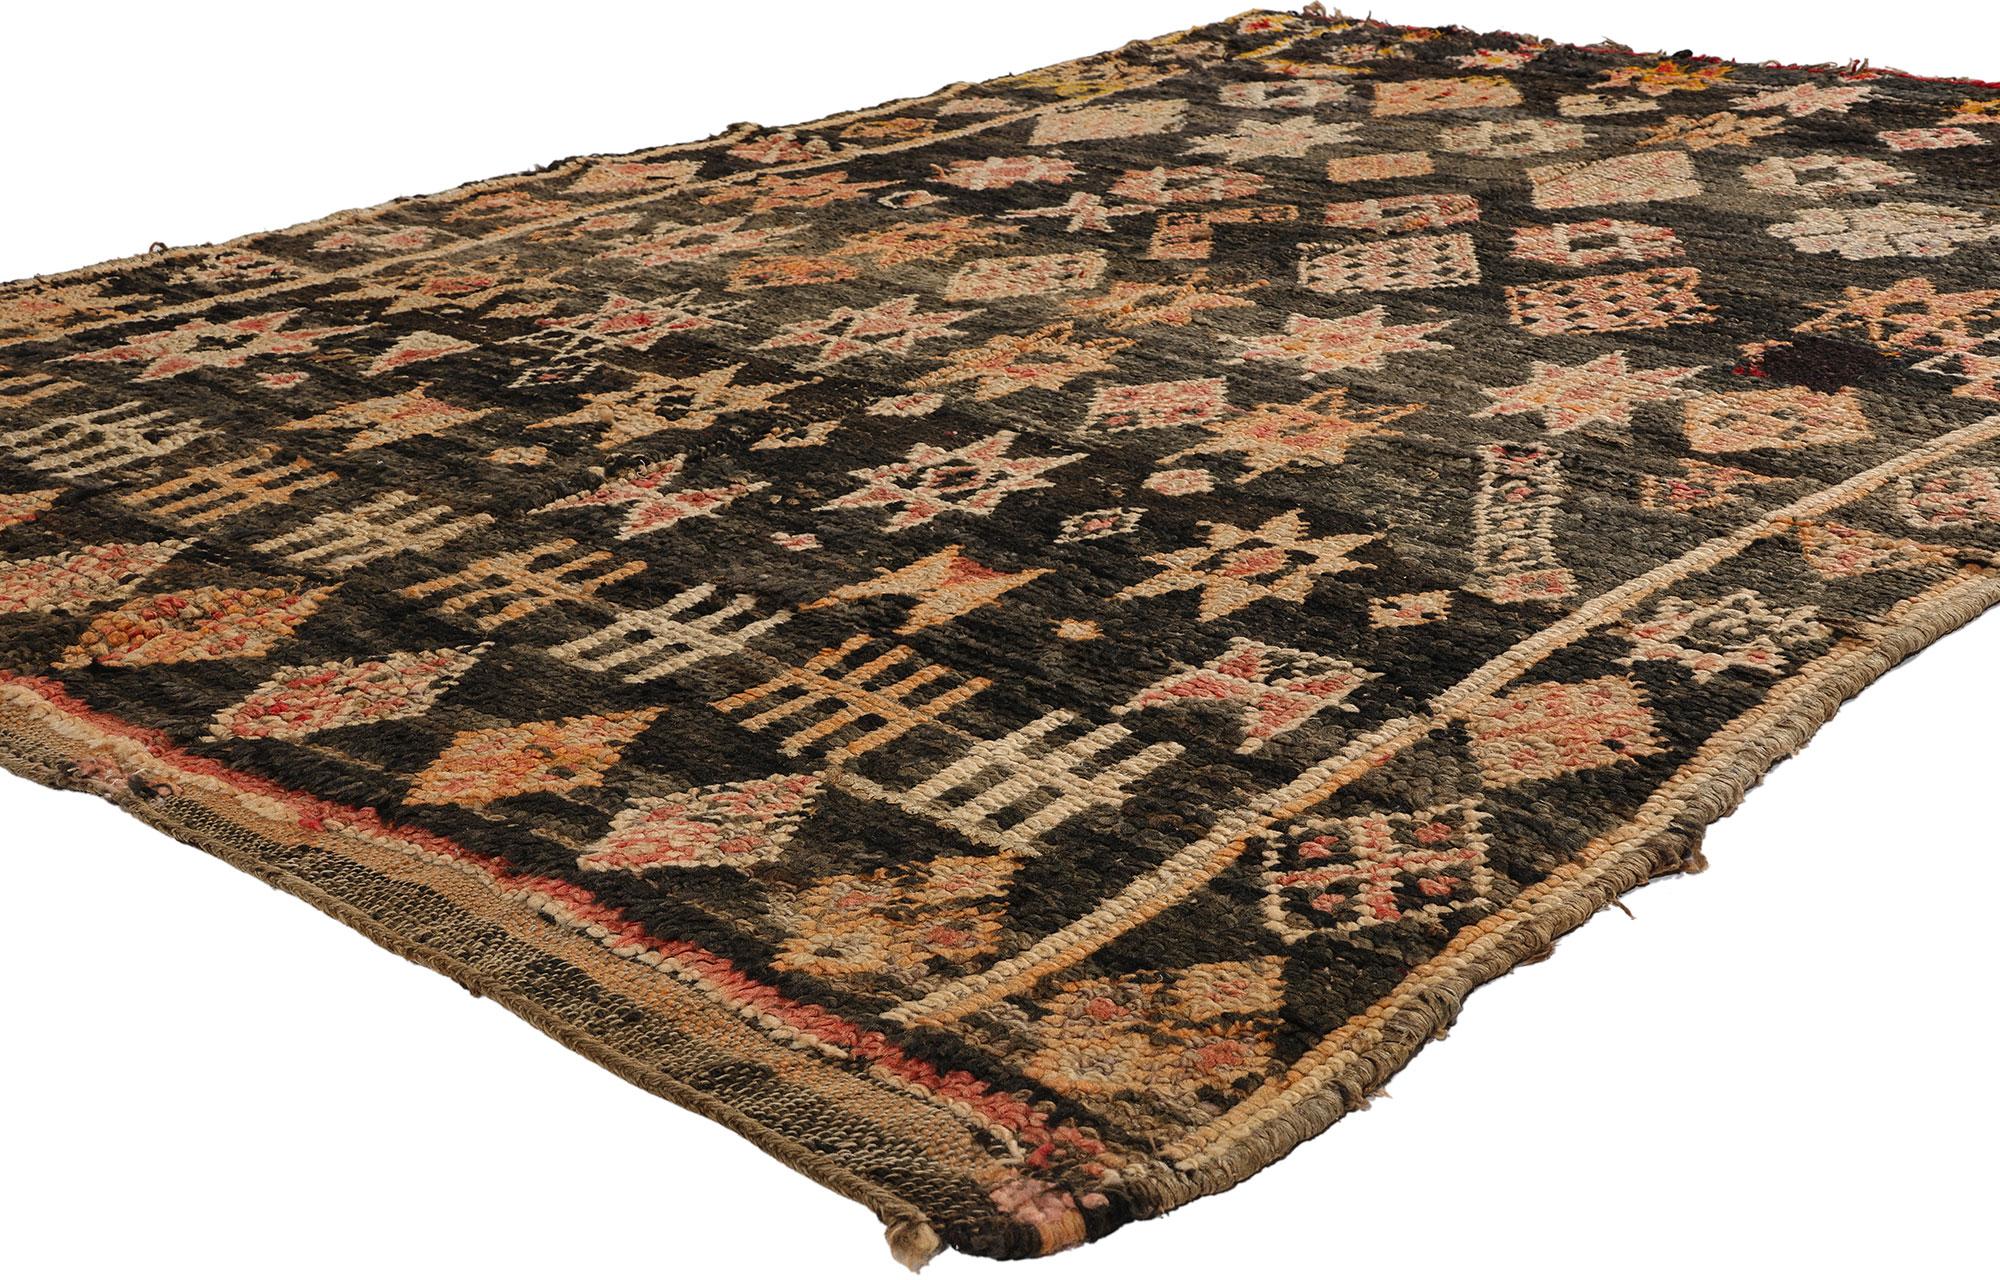 21767 Vintage Black Beni Mrirt Marokkanischer Teppich, 05'02 x 07'05. Beni Mrirt-Teppiche verkörpern die geschätzte Tradition der marokkanischen Weberei, die für ihre üppige Textur, ihre komplizierten geometrischen Muster und ihre beruhigenden